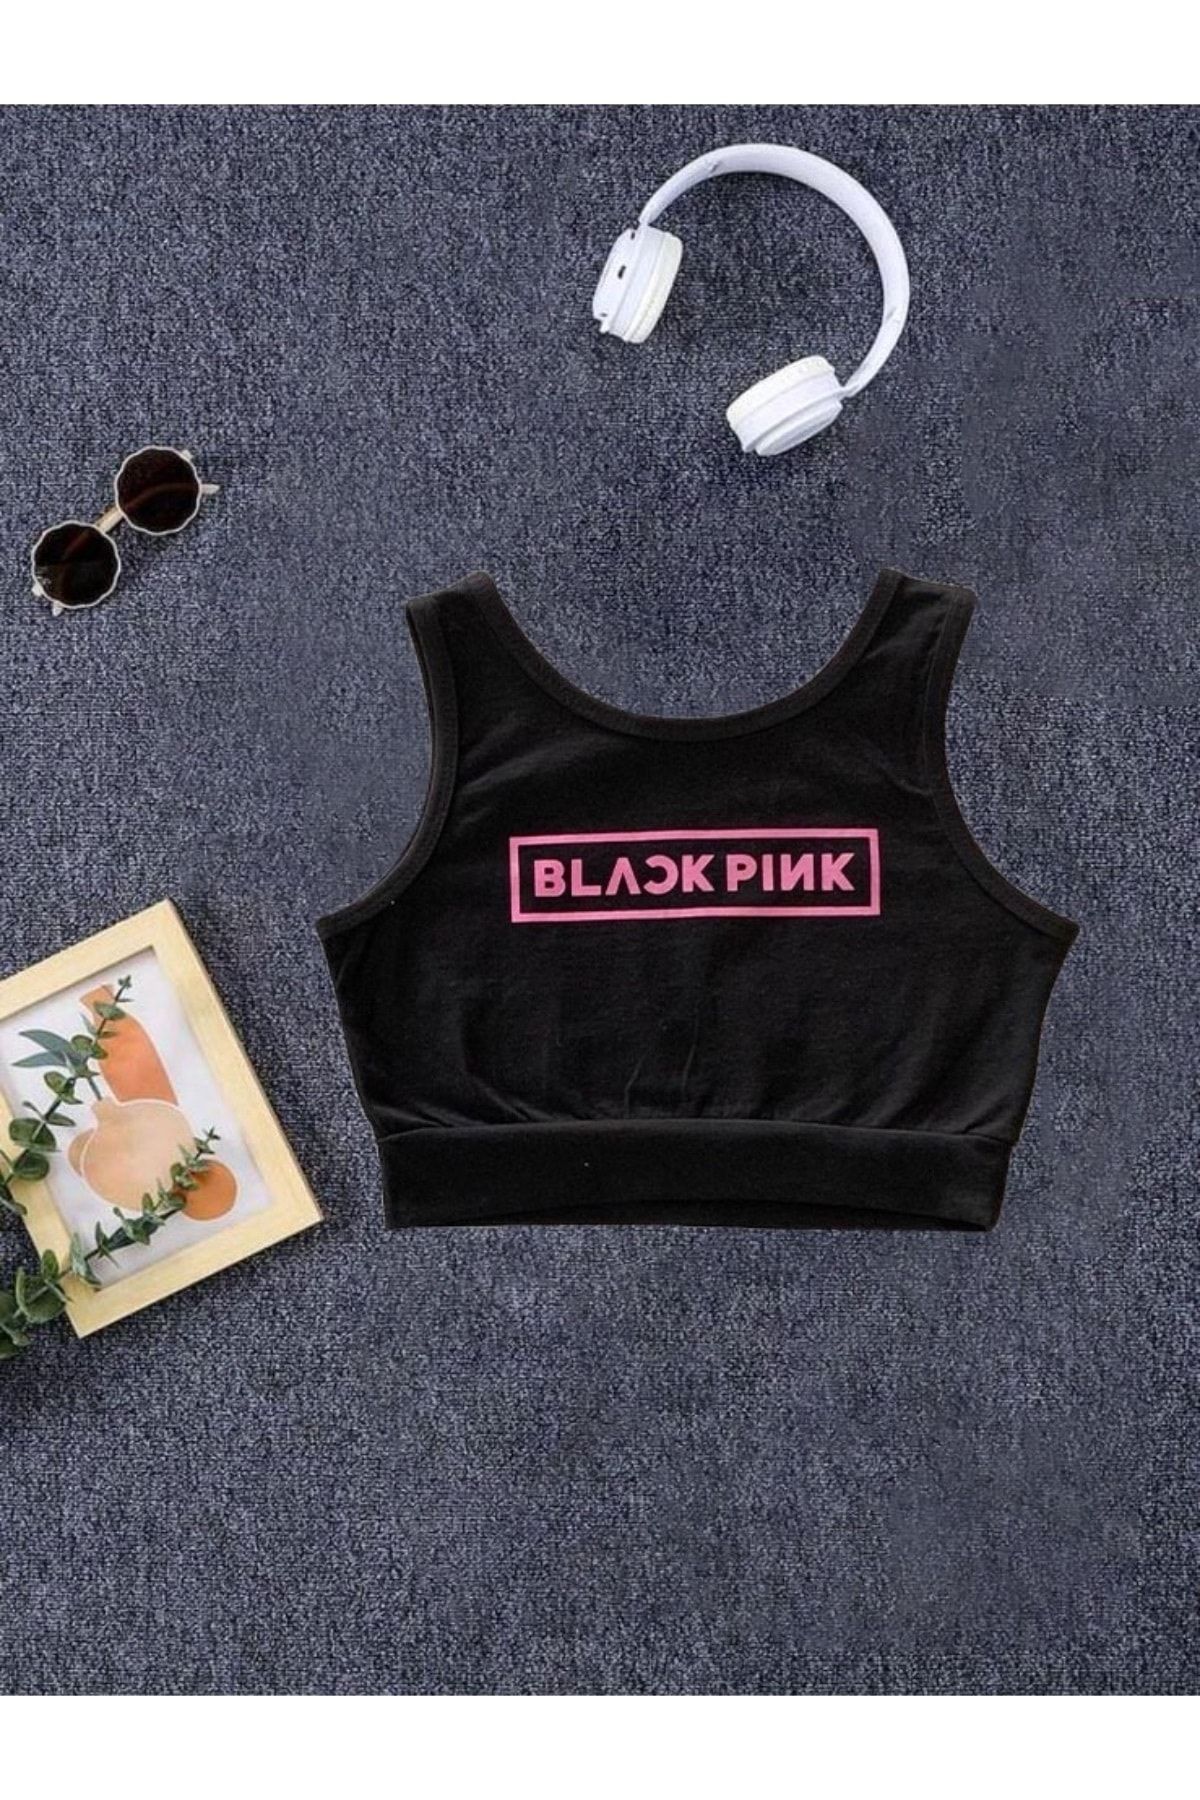 Machetta BlackPink Baskılı Siyah Renk Kız Çocuk Crop Bluz